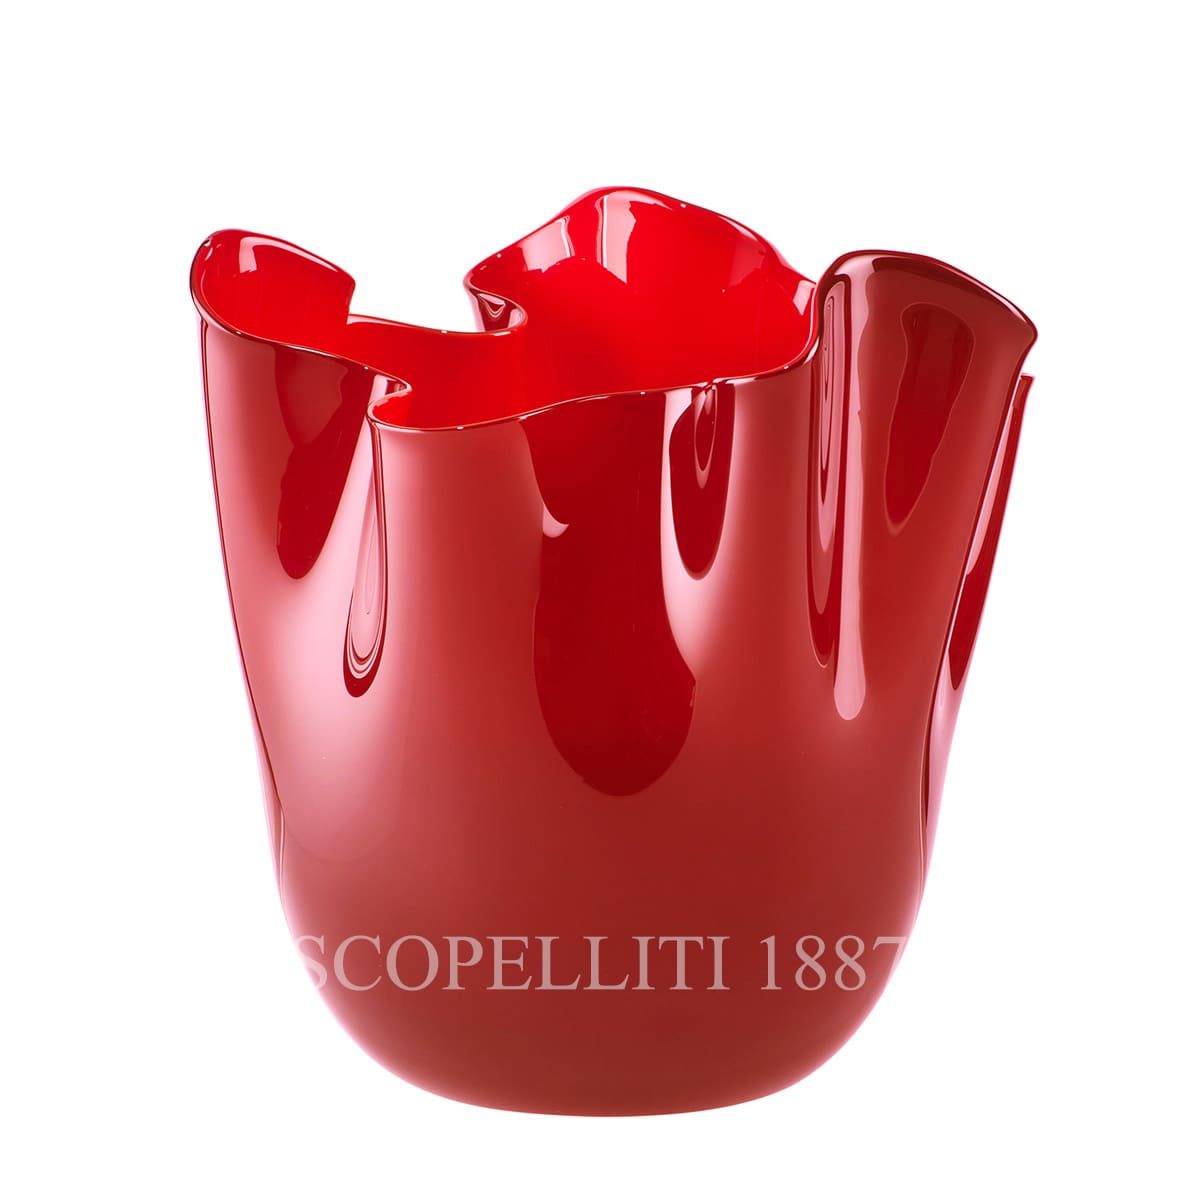 venini gift fazzoletto large red vase